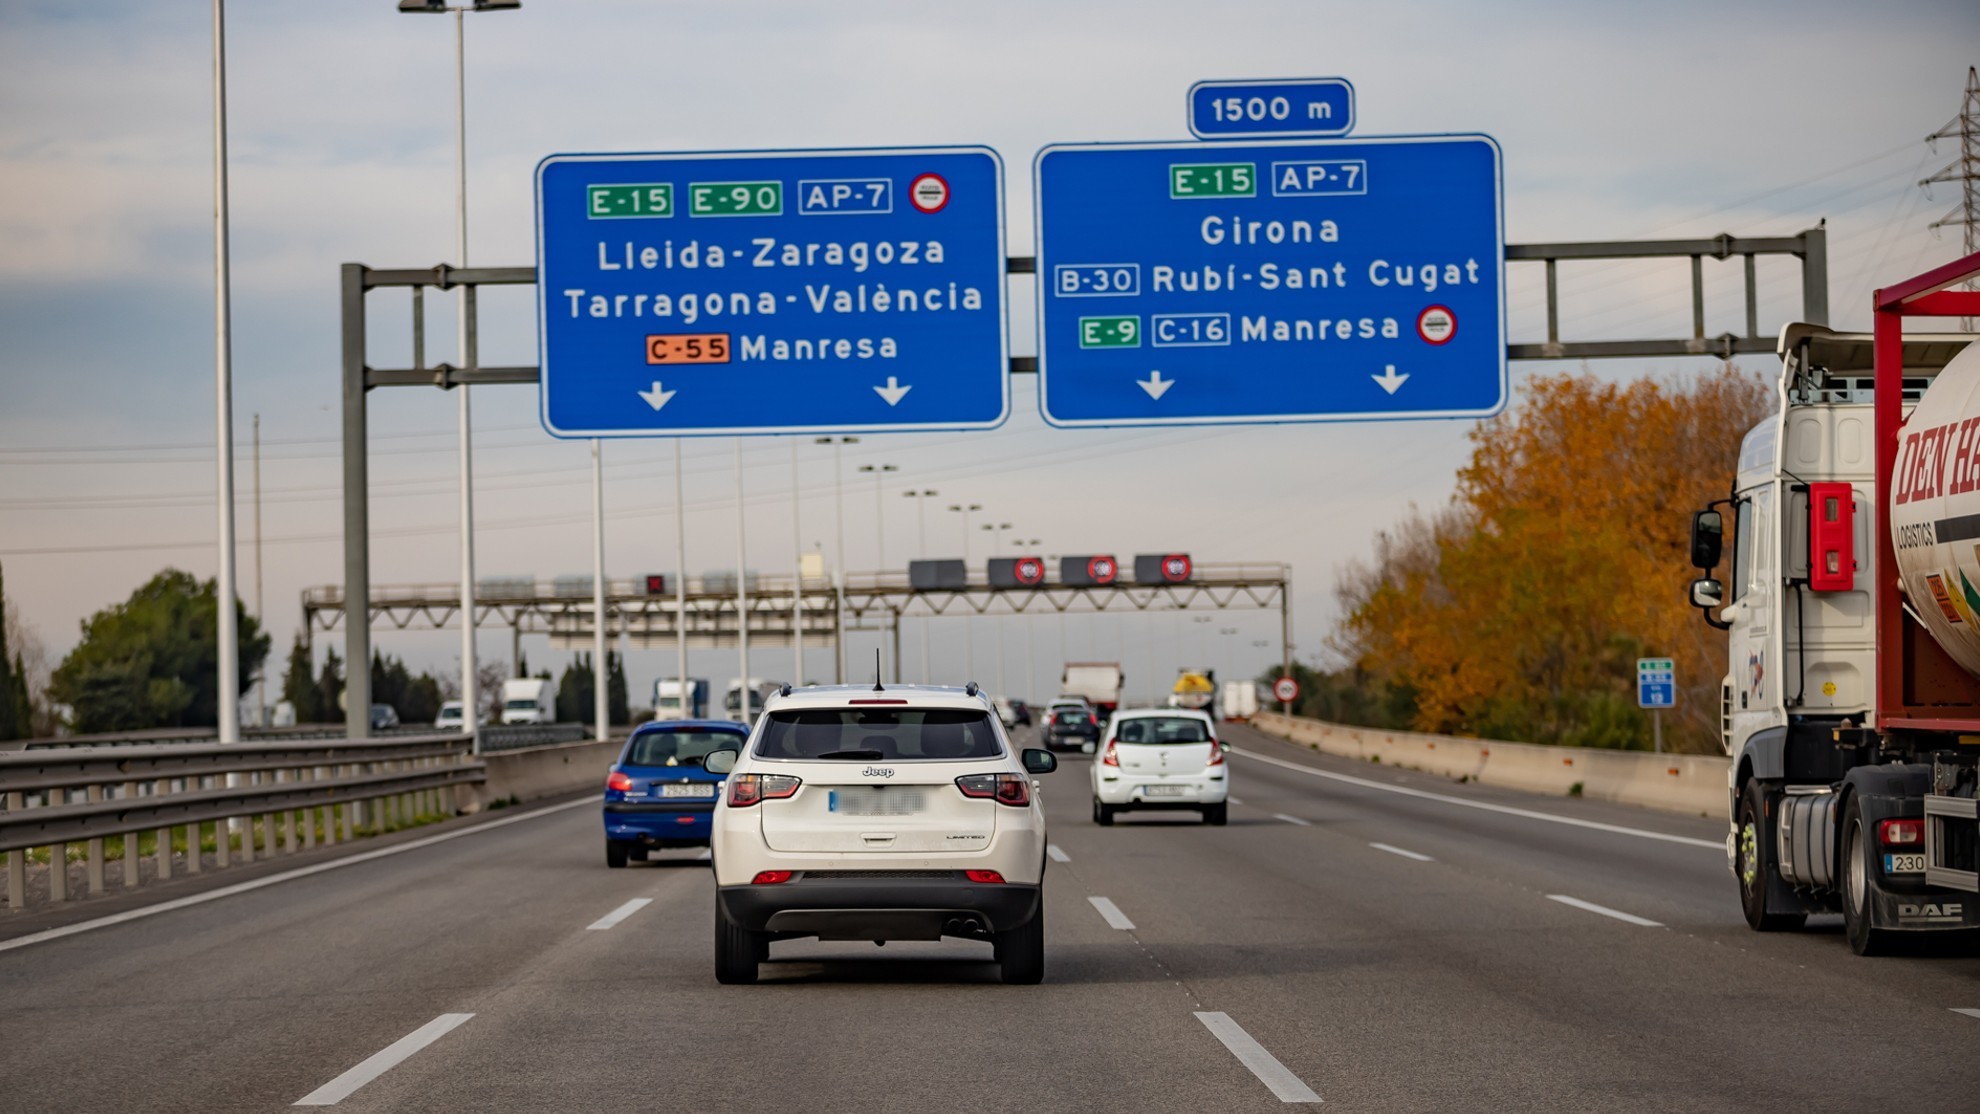 Limite 110 km/h - AP-7 - autopista del mediterraneo - limite de velocidad - siniestralidad